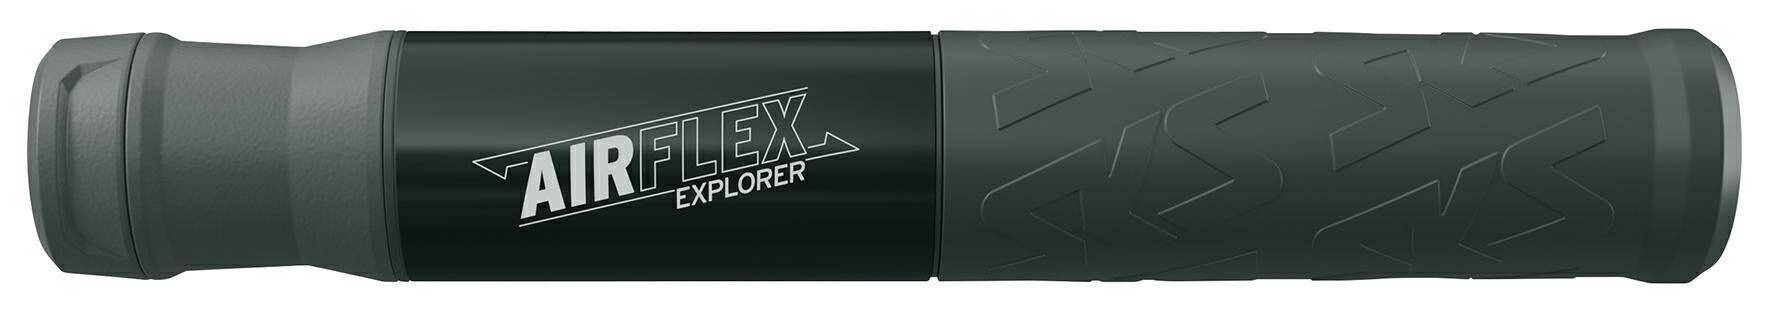 Pompka SKS Airflex Explorer czarna